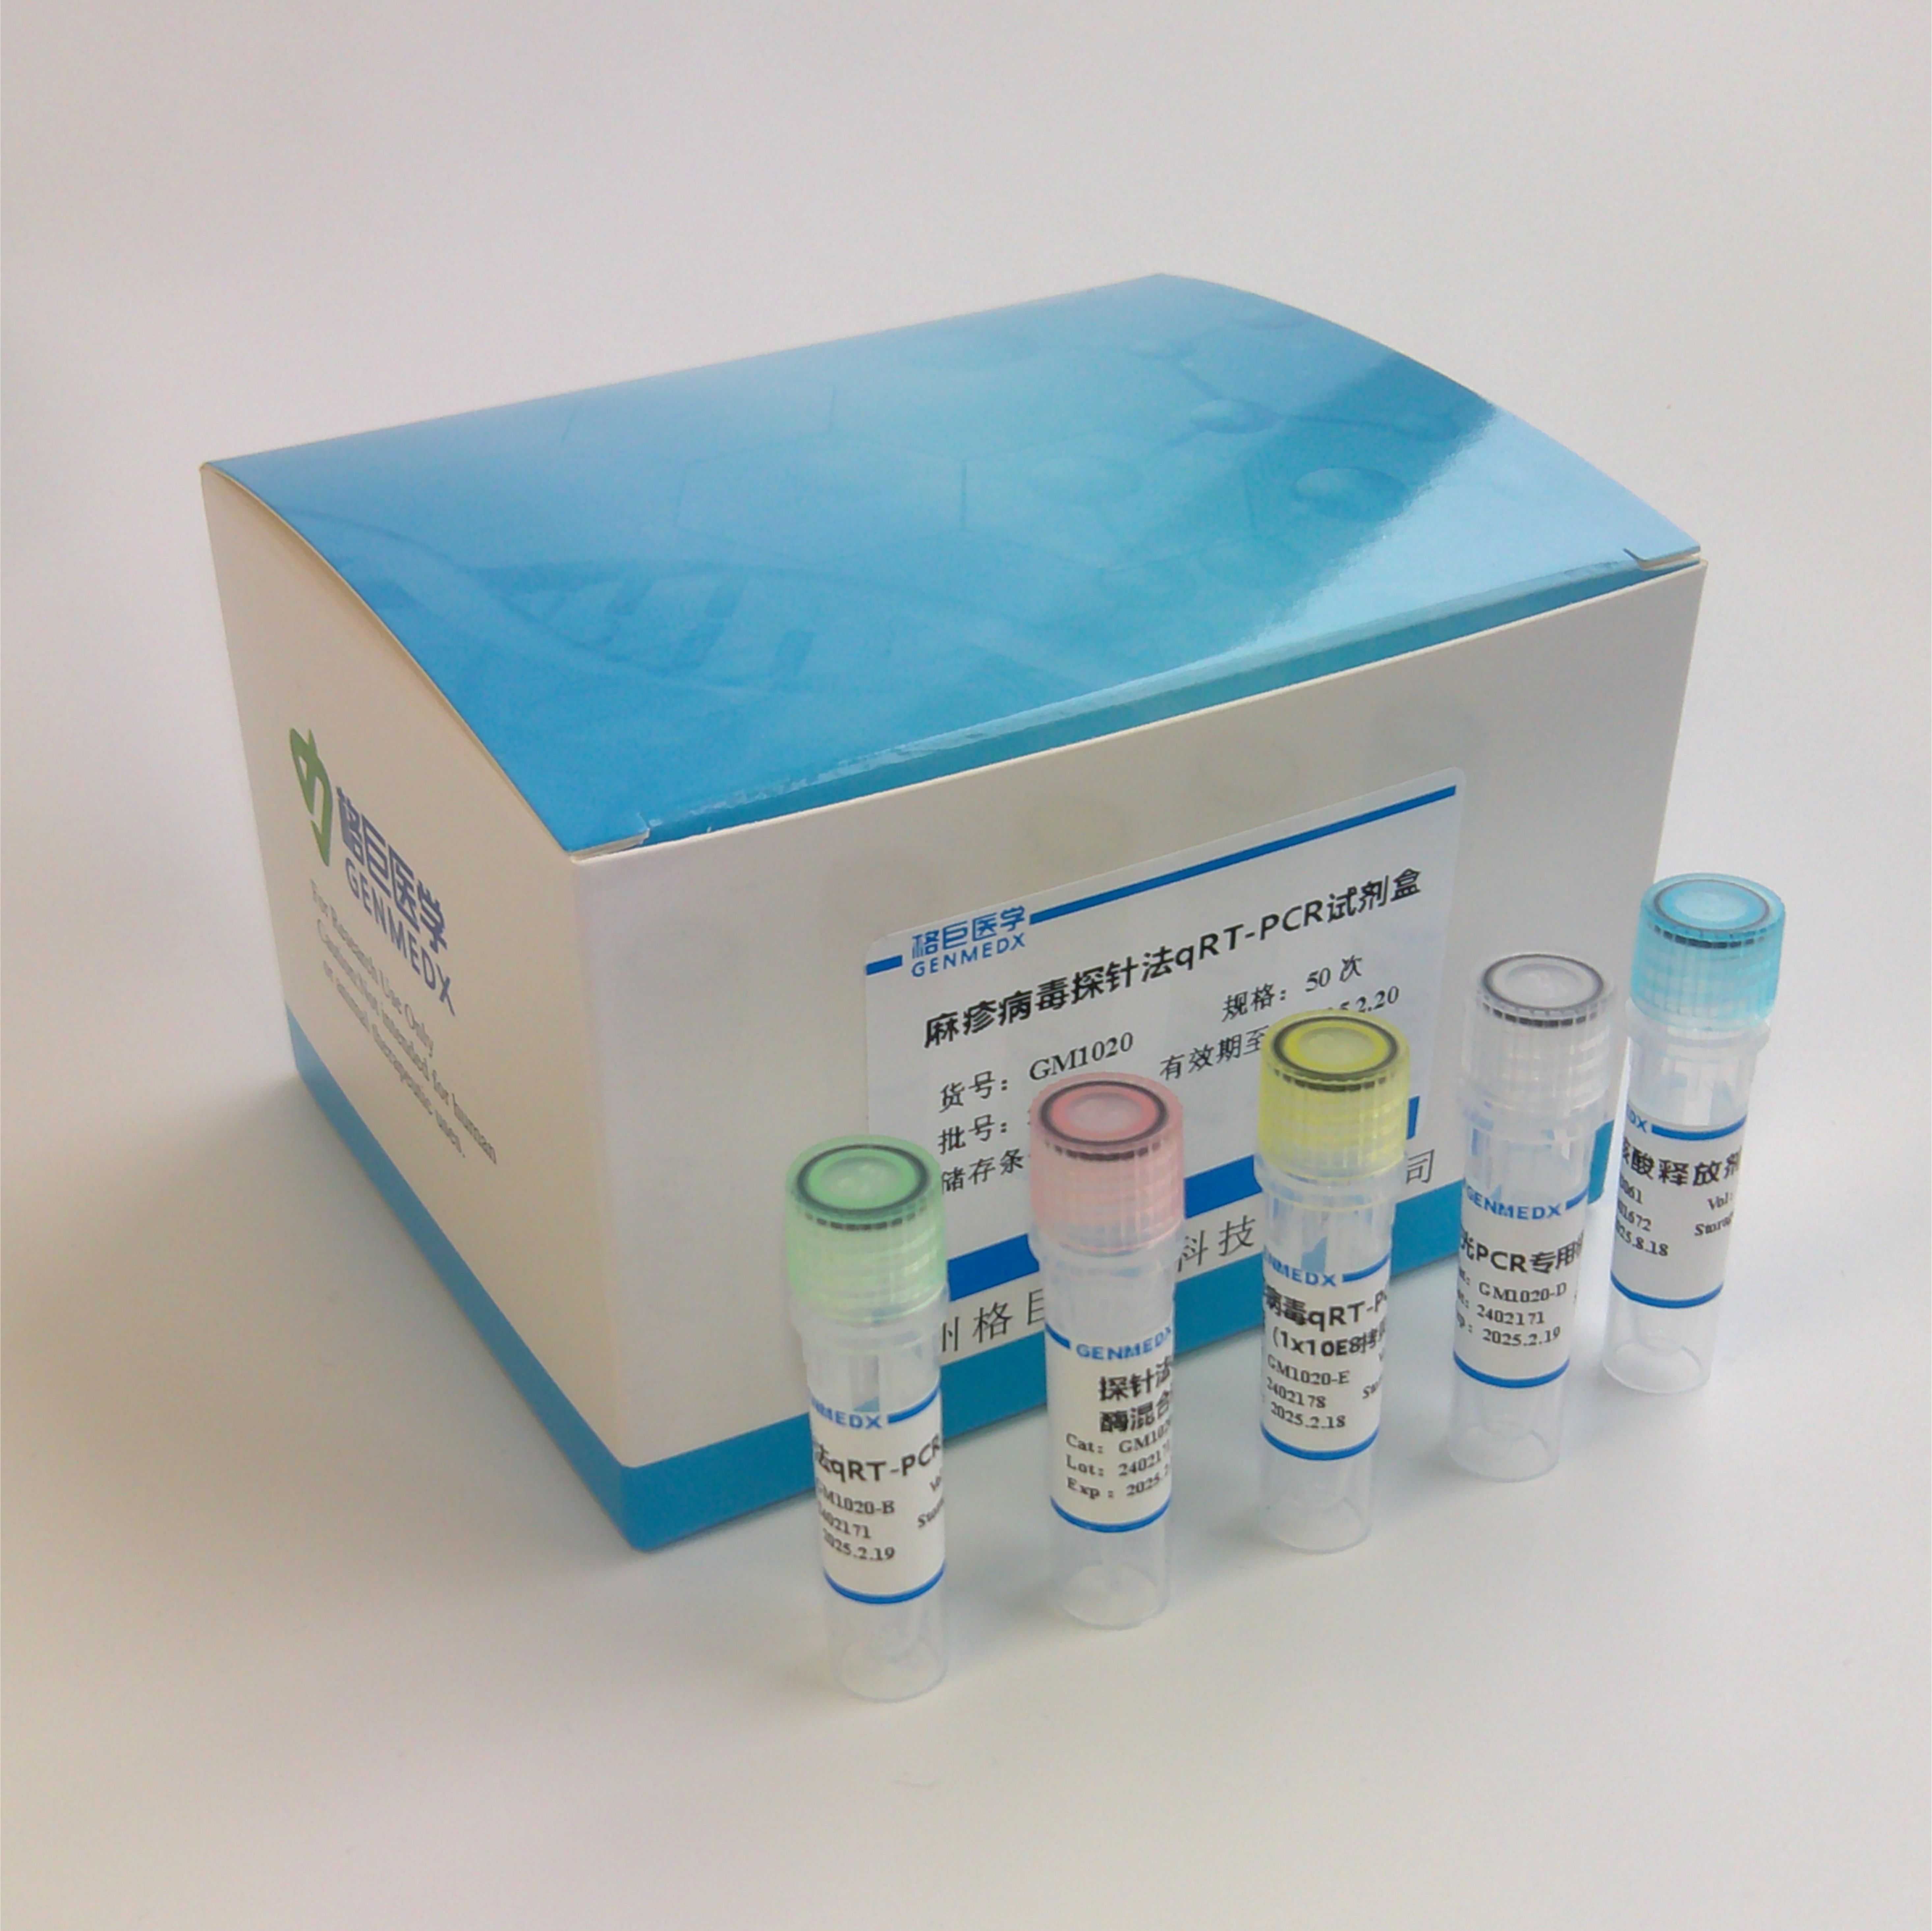 艰难梭菌及毒力基因双重探针法荧光定量PCR试剂盒